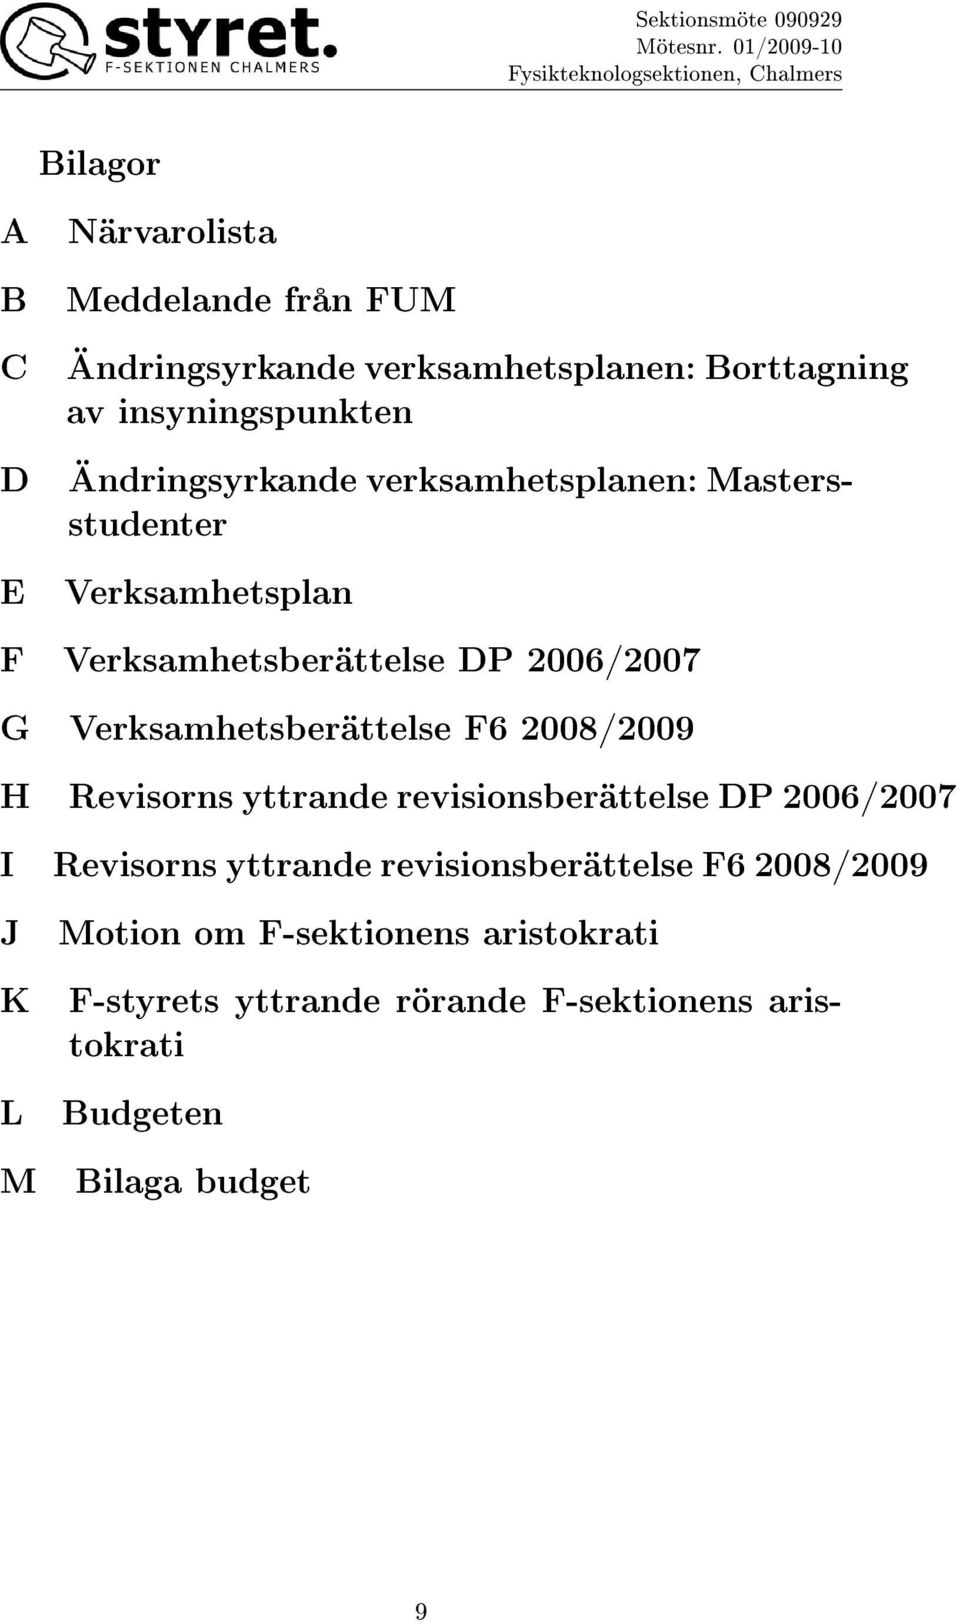 Verksamhetsberättelse F6 2008/2009 H Revisorns yttrande revisionsberättelse DP 2006/2007 I Revisorns yttrande